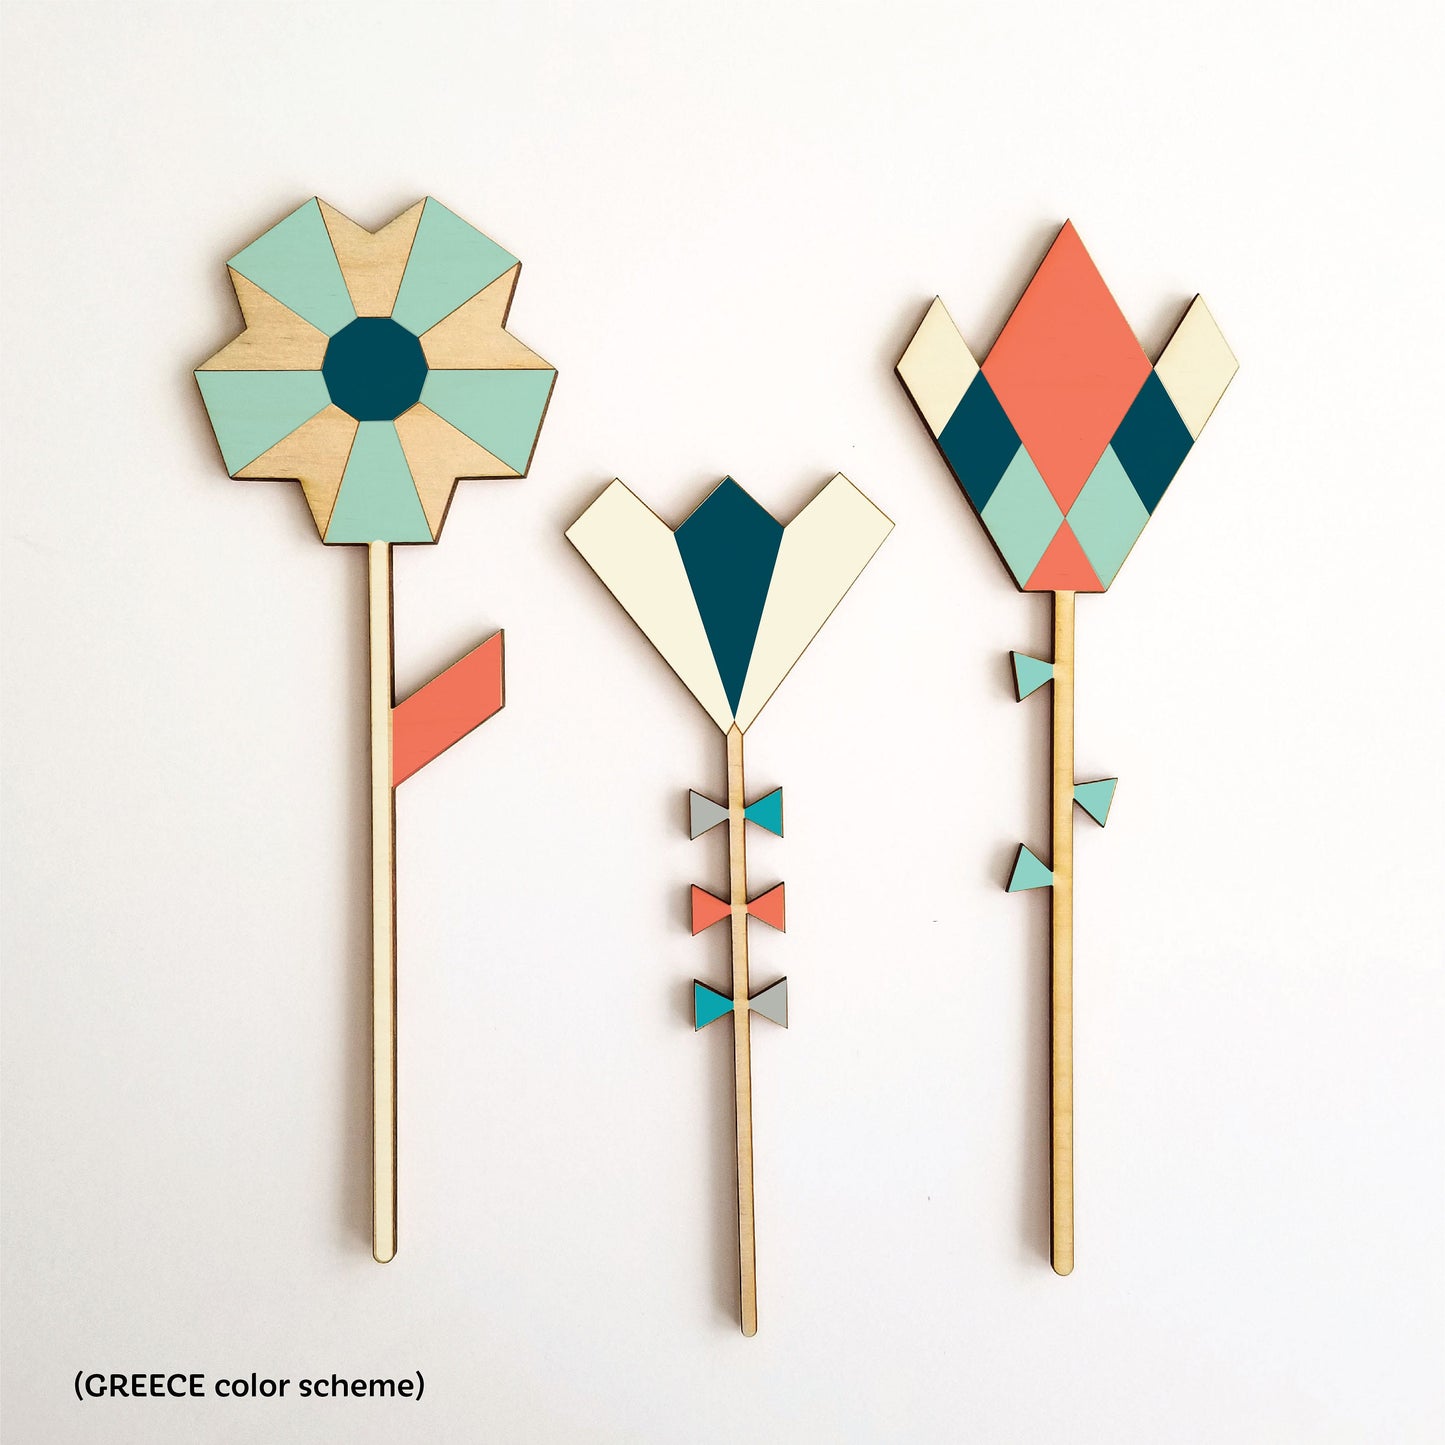 Geometric Wood Flowers Paint Kit